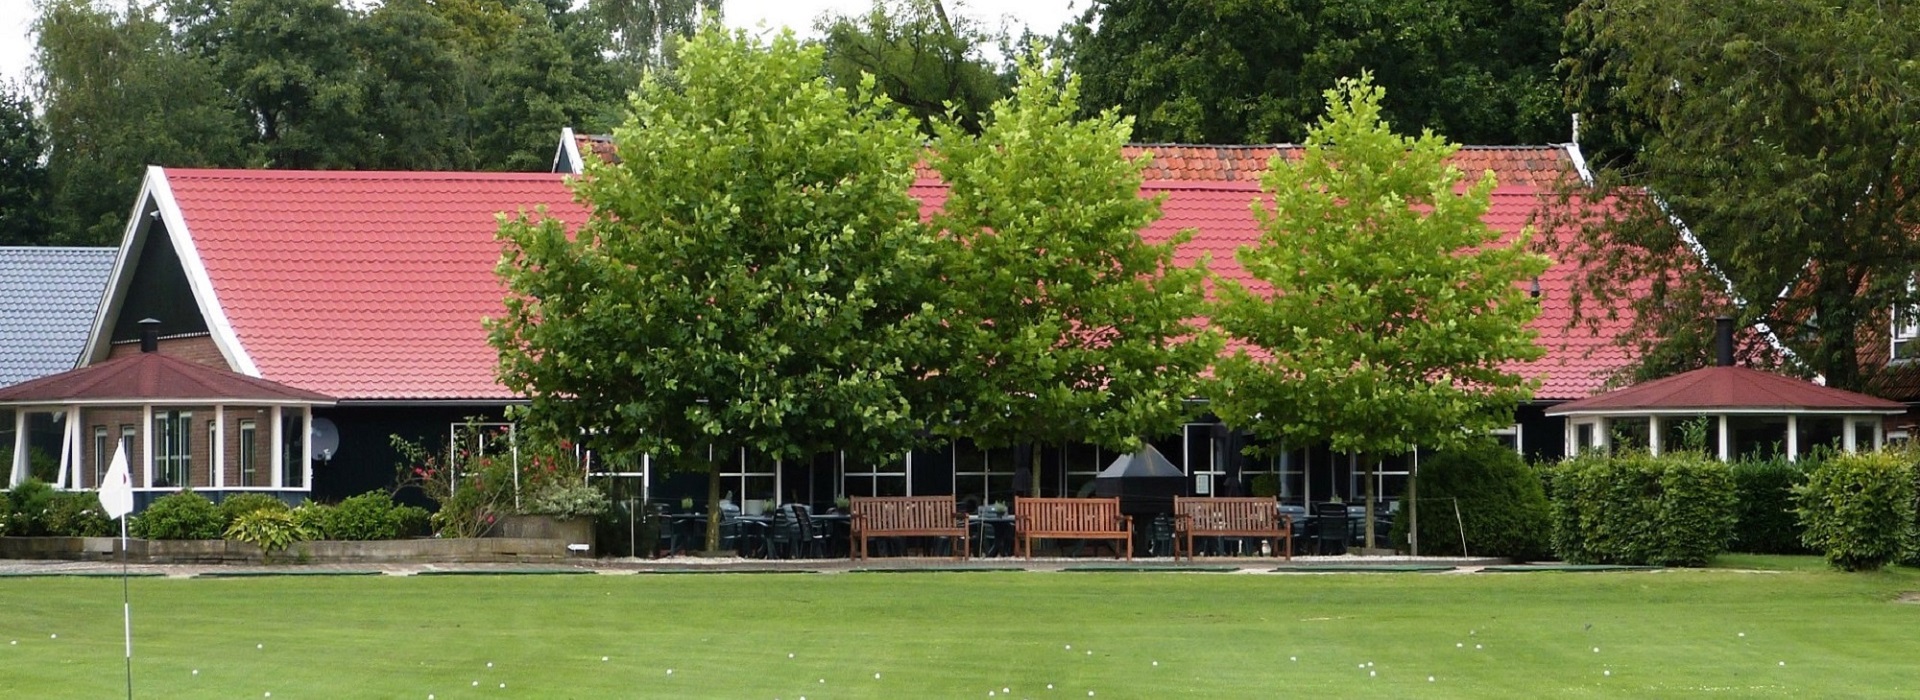 Clubhuis - Golfbaan - Barbecue - Stamppot - Koud & Warm Buffet - Feestzaal - Vergaderen - Arrangementen - Twente - Boekelo - Enschede - Hengelo - Haaksbergen - Delden - Coulisselandschap